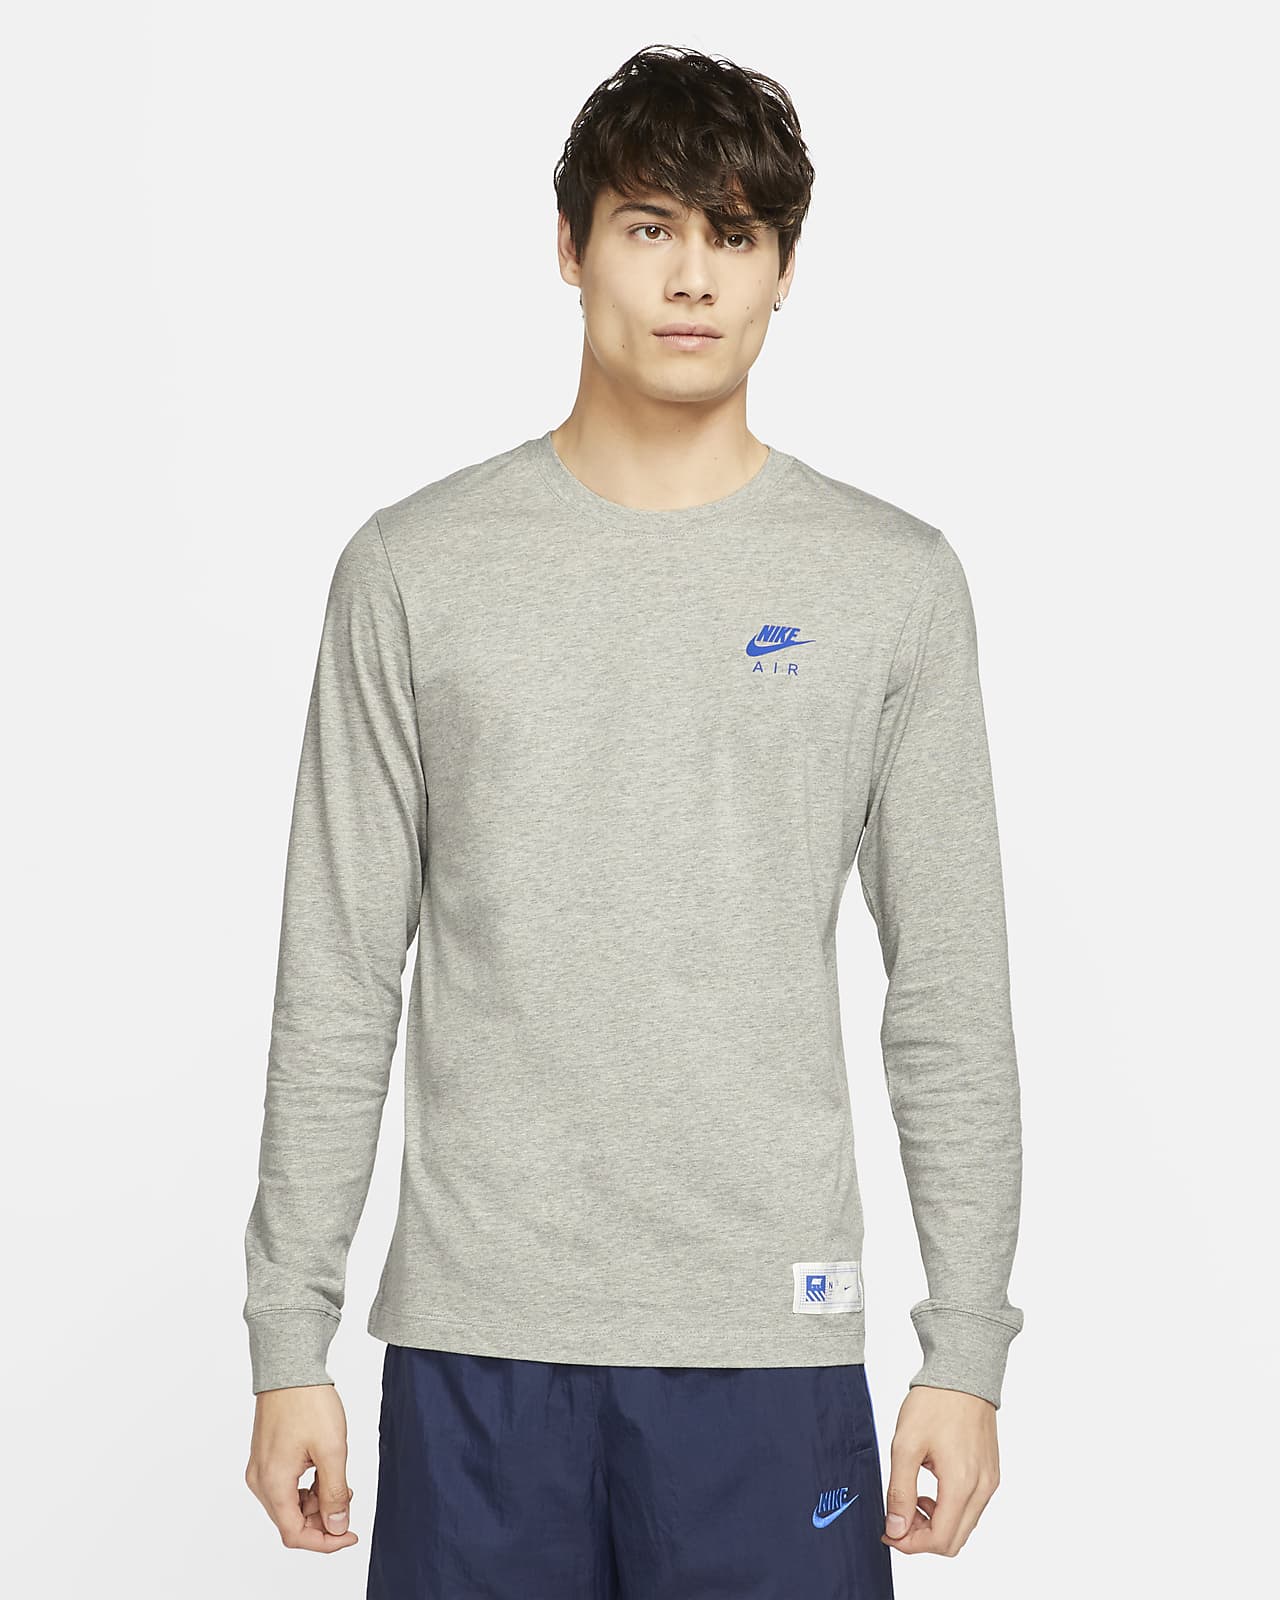 Nike Sportswear Men's LongSleeve TShirt.